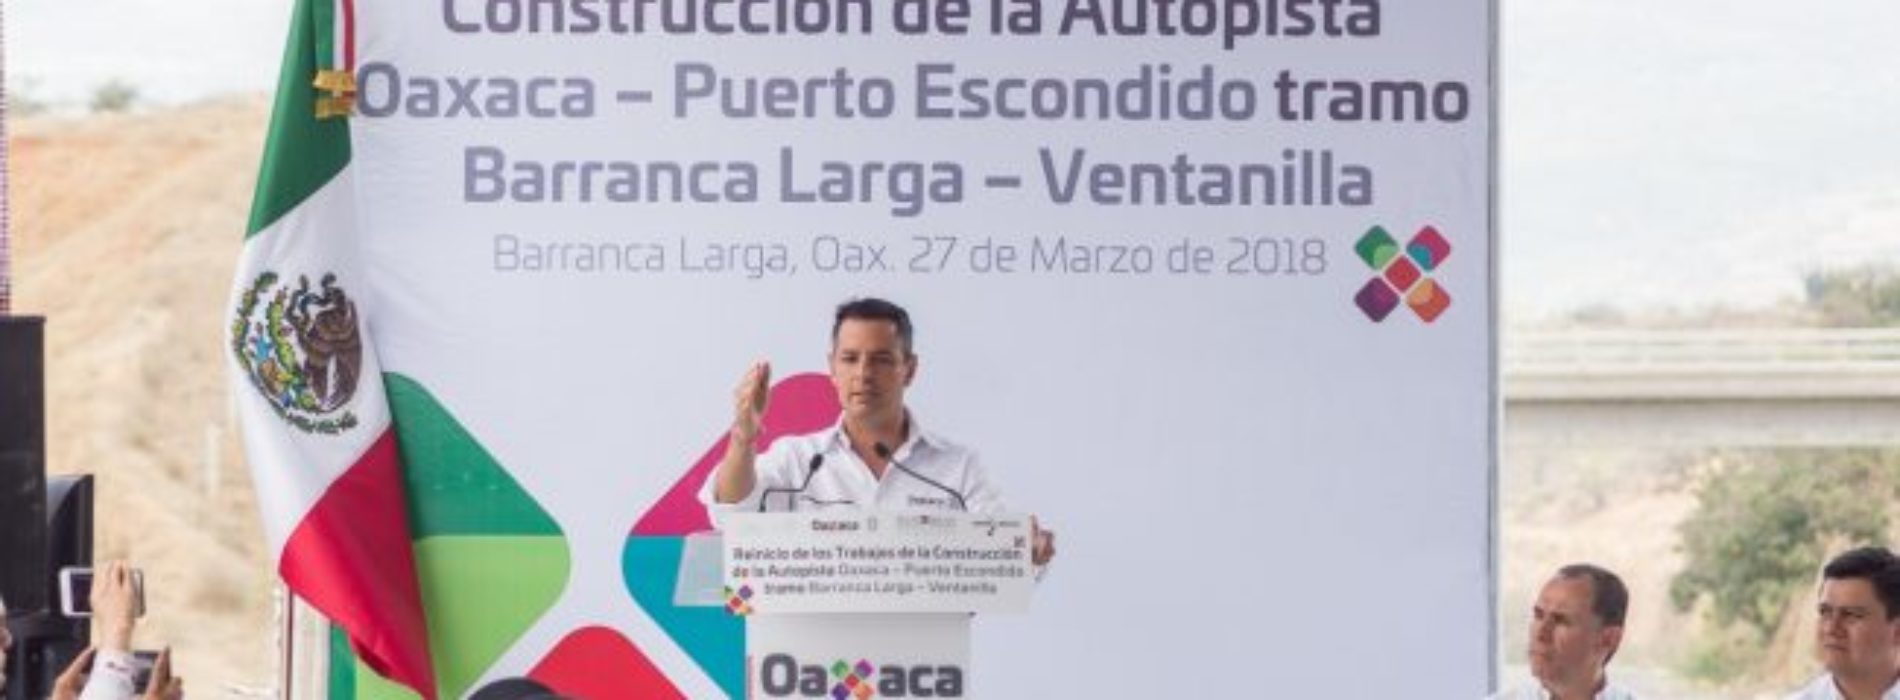 Tras una década abandonada, Alejandro Murat reinicia obras
de construcción de la carretera a la Costa